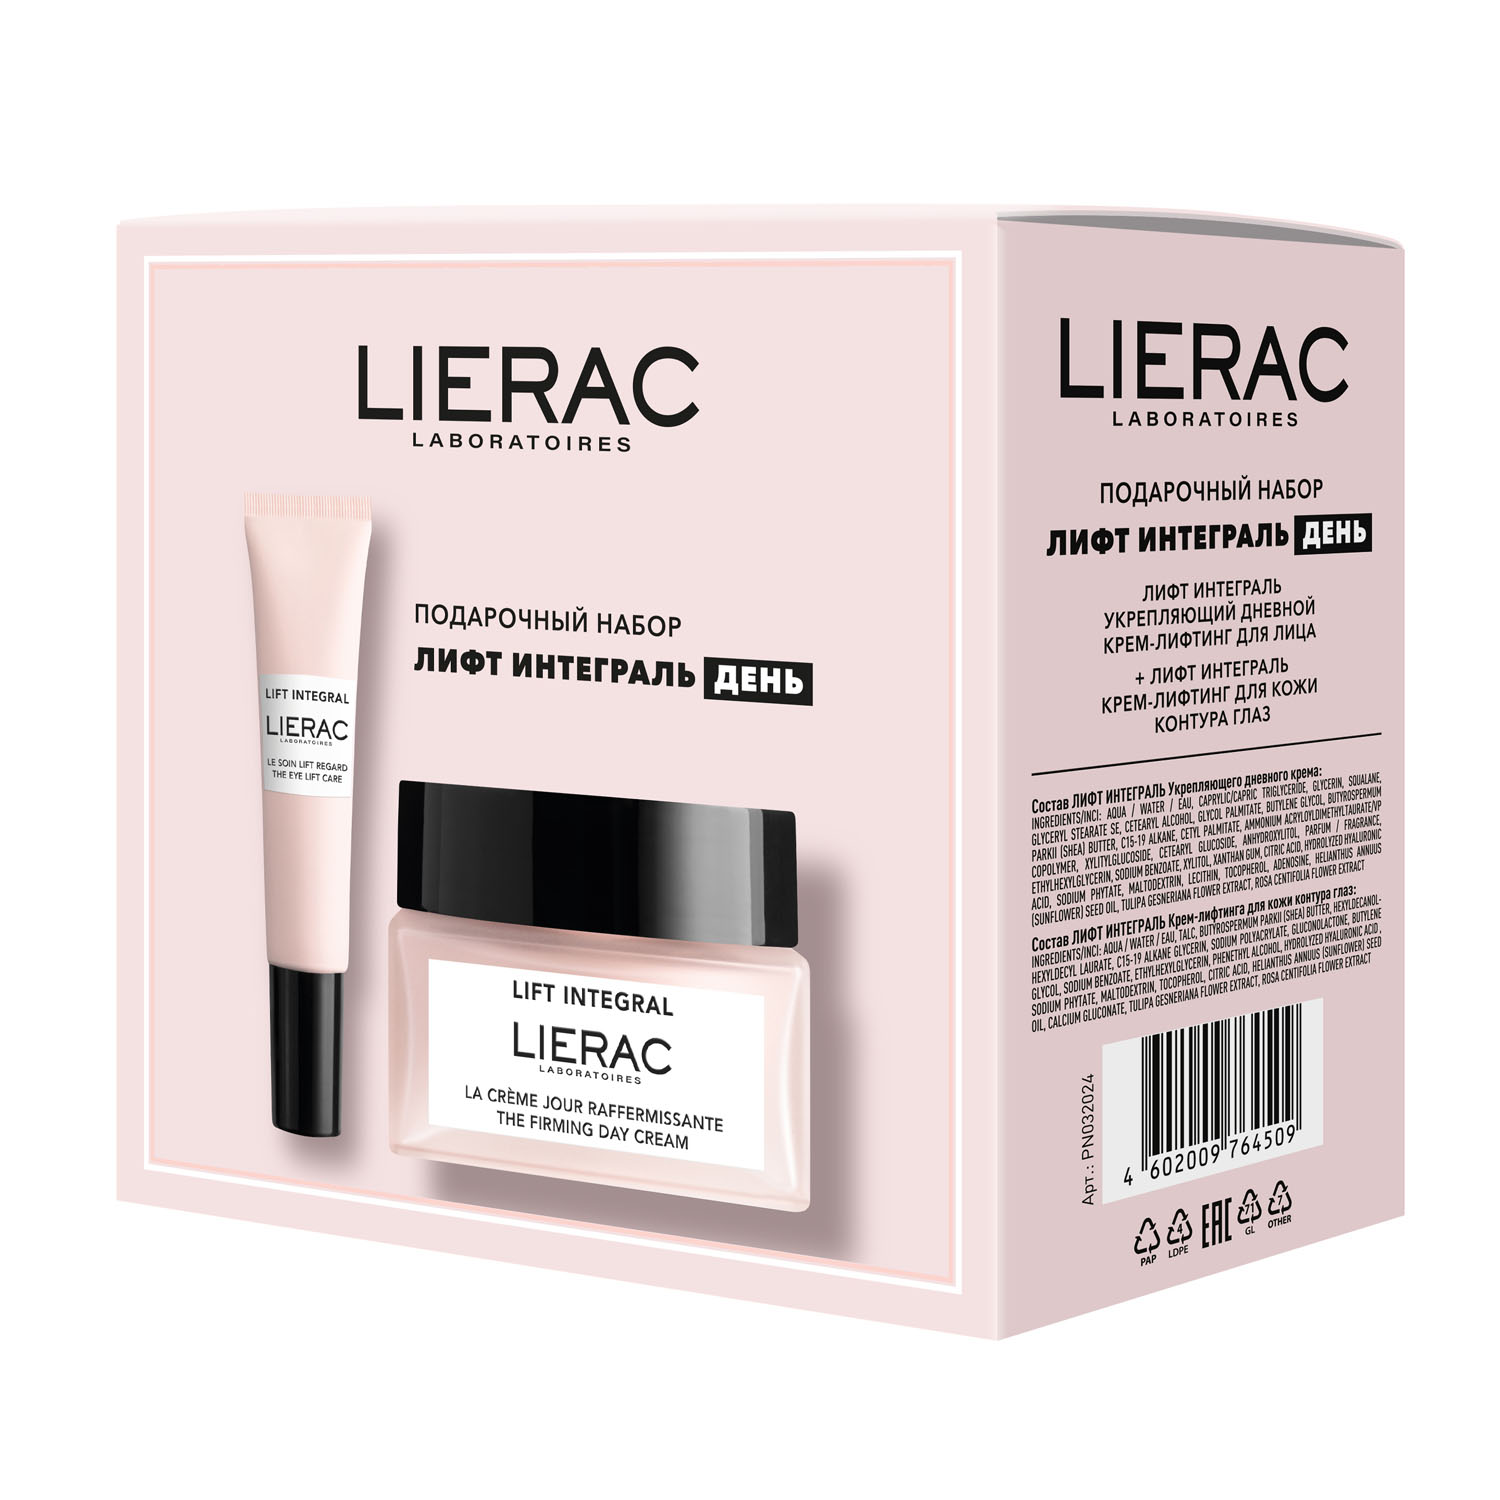 Lierac Подарочный набор: дневной крем-лифтинг для лица 50 мл + крем-лифтинг для кожи контура глаз 15 мл (Lierac, Lift Integral) фотографии